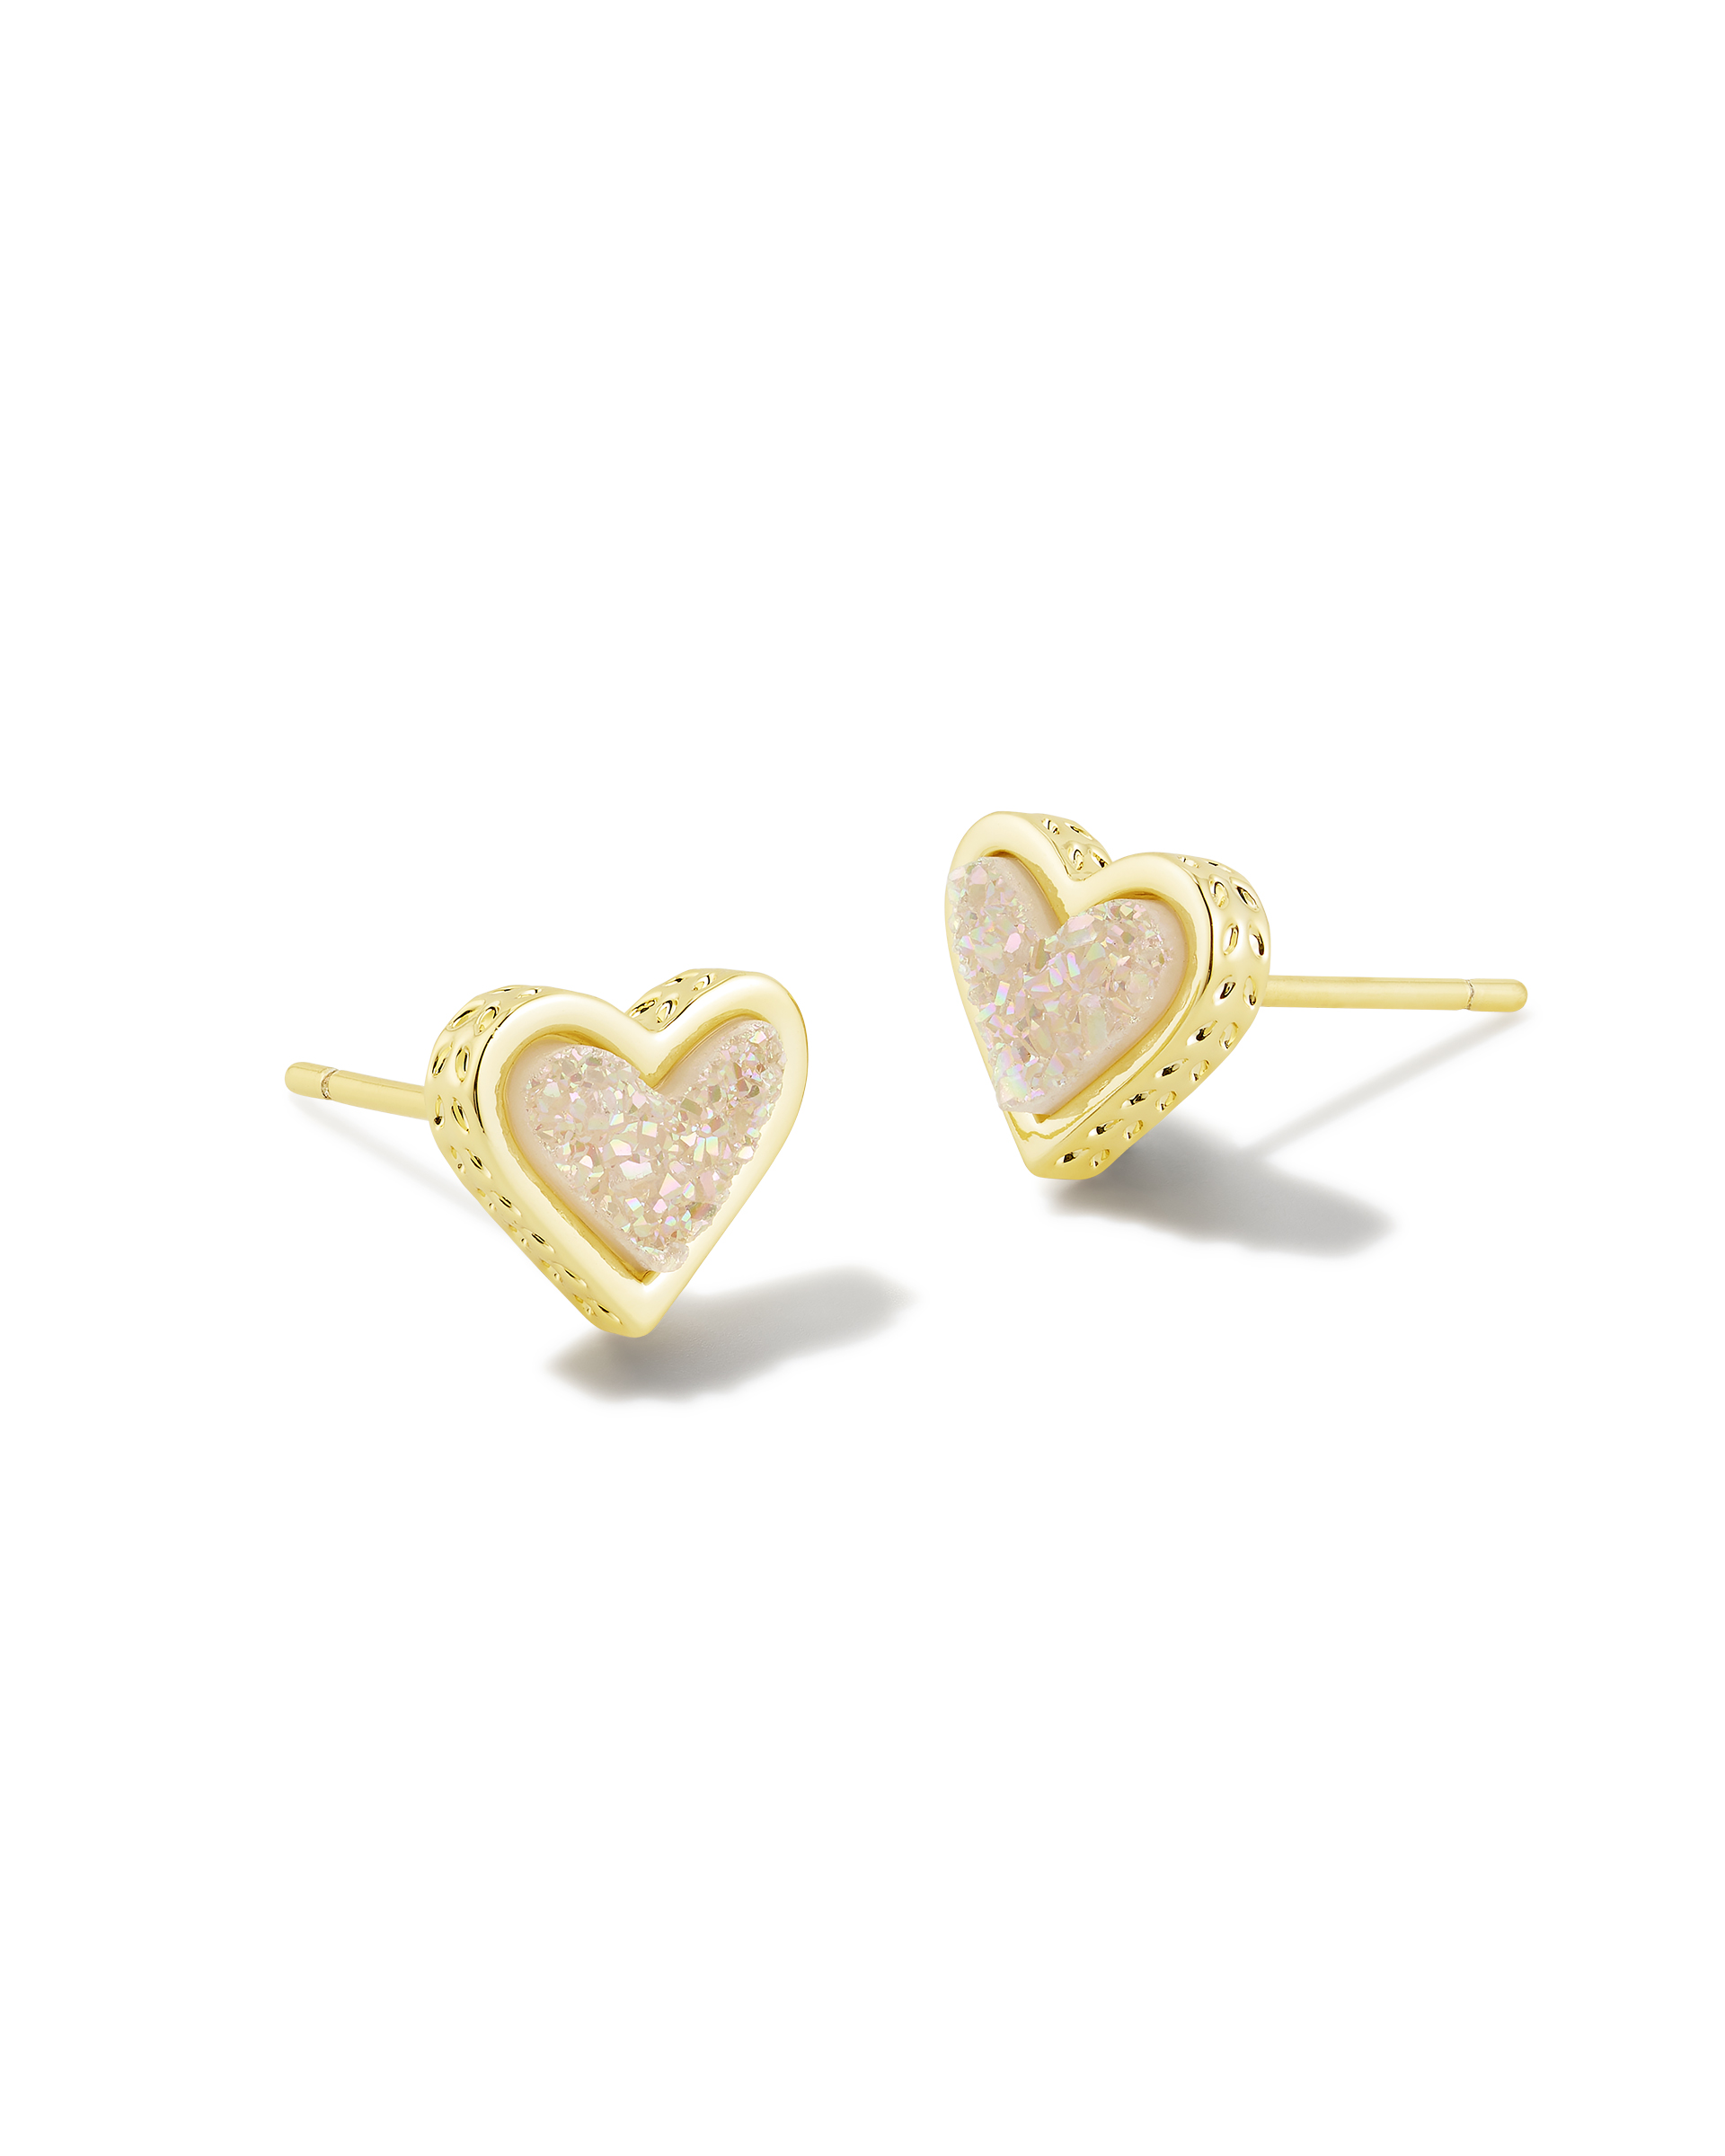 Framed Ari Heart Gold Stud Earrings in Iridescent Drusy | Kendra Scott